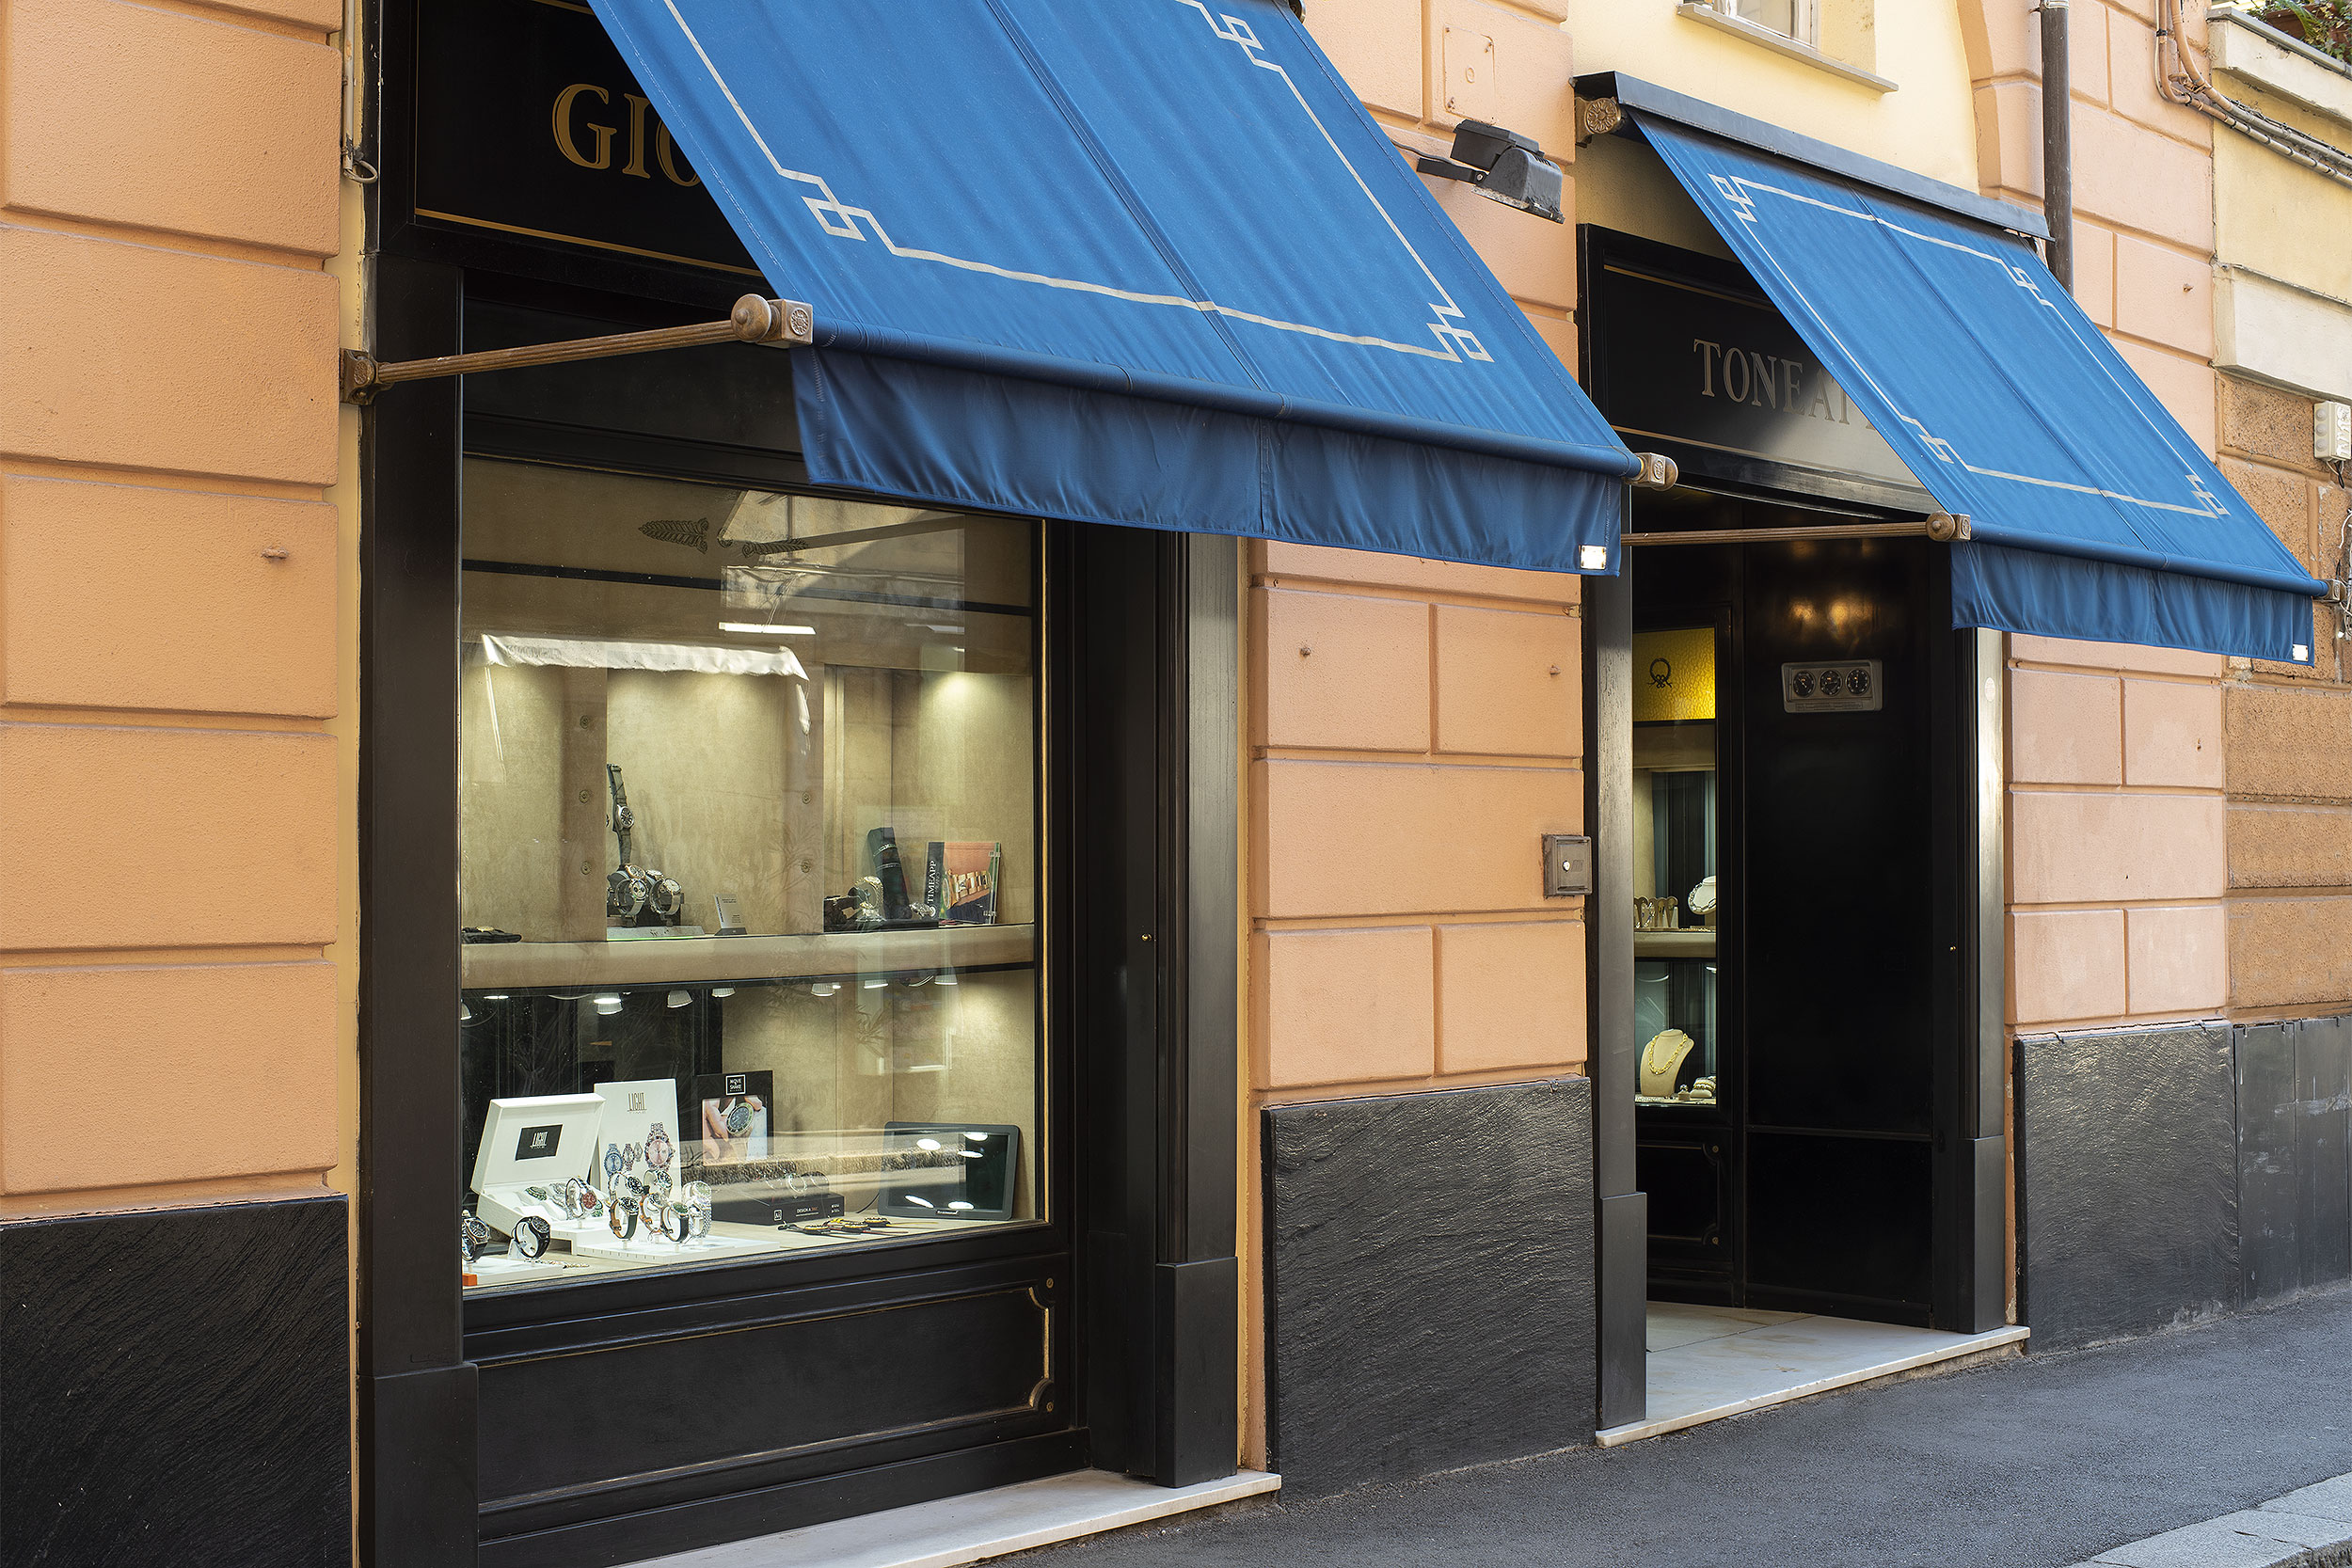 Toneatto Gioielli - Genova - Il negozio di via Galata